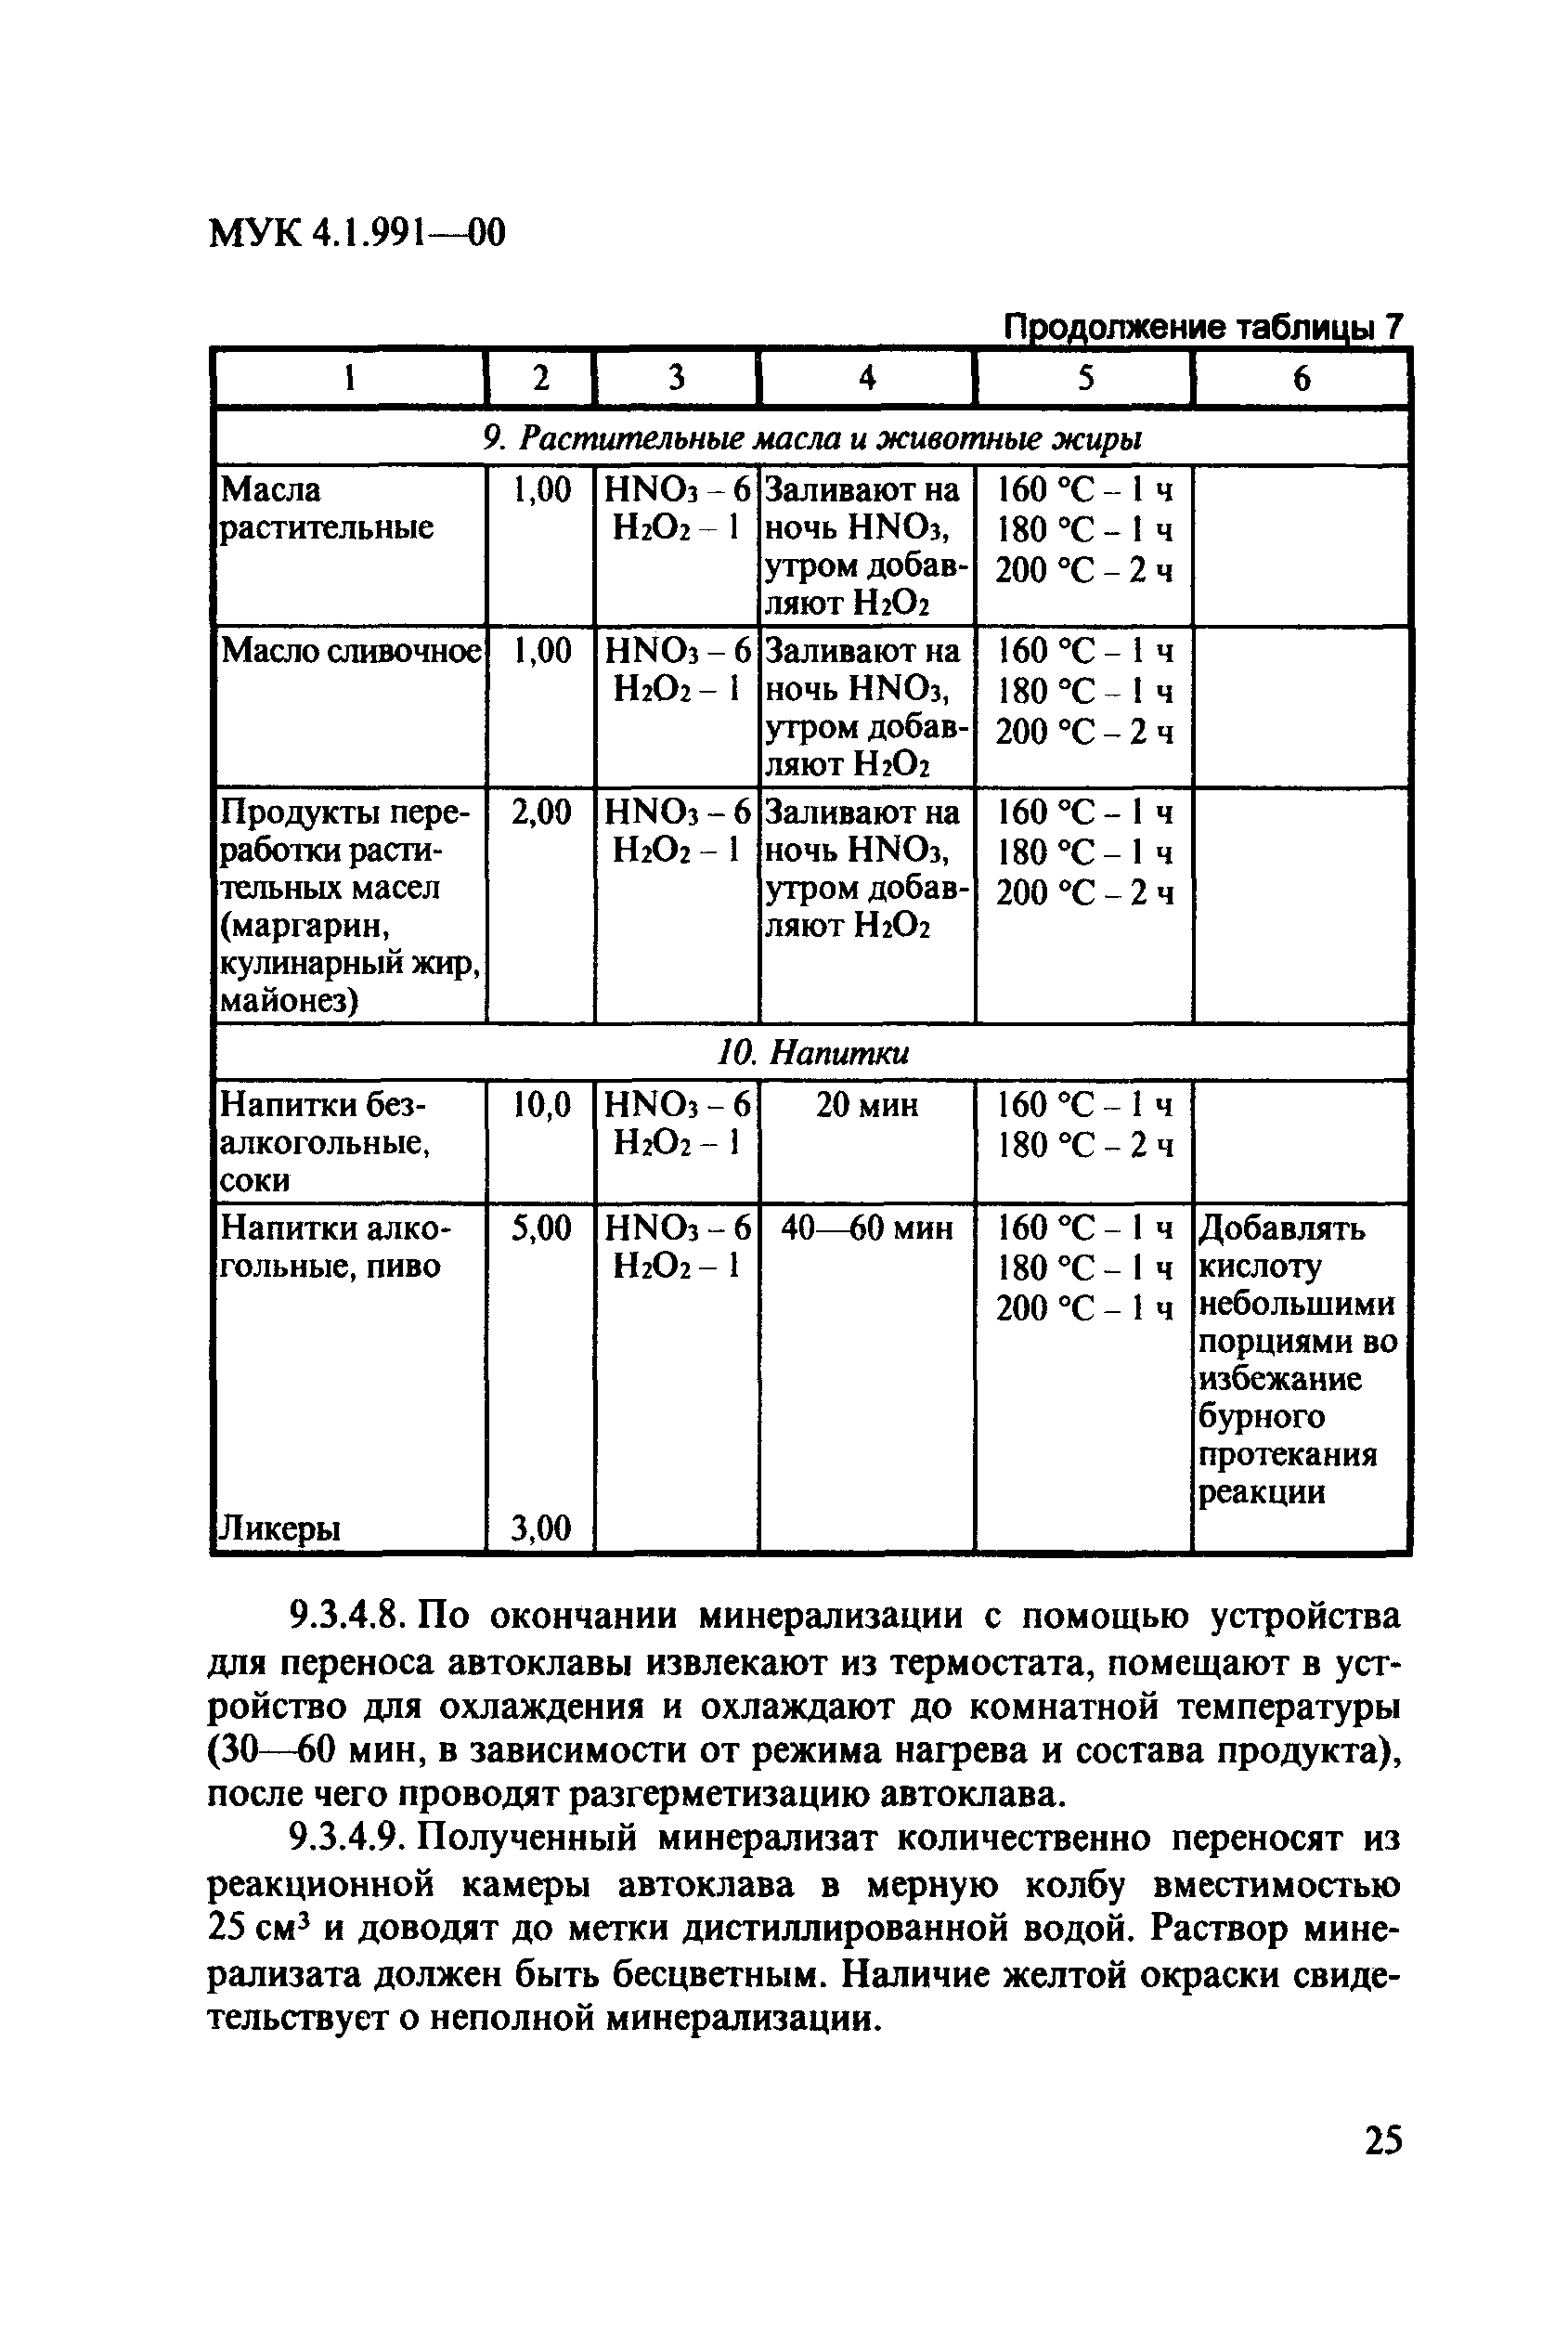 МУК 4.1.991-00